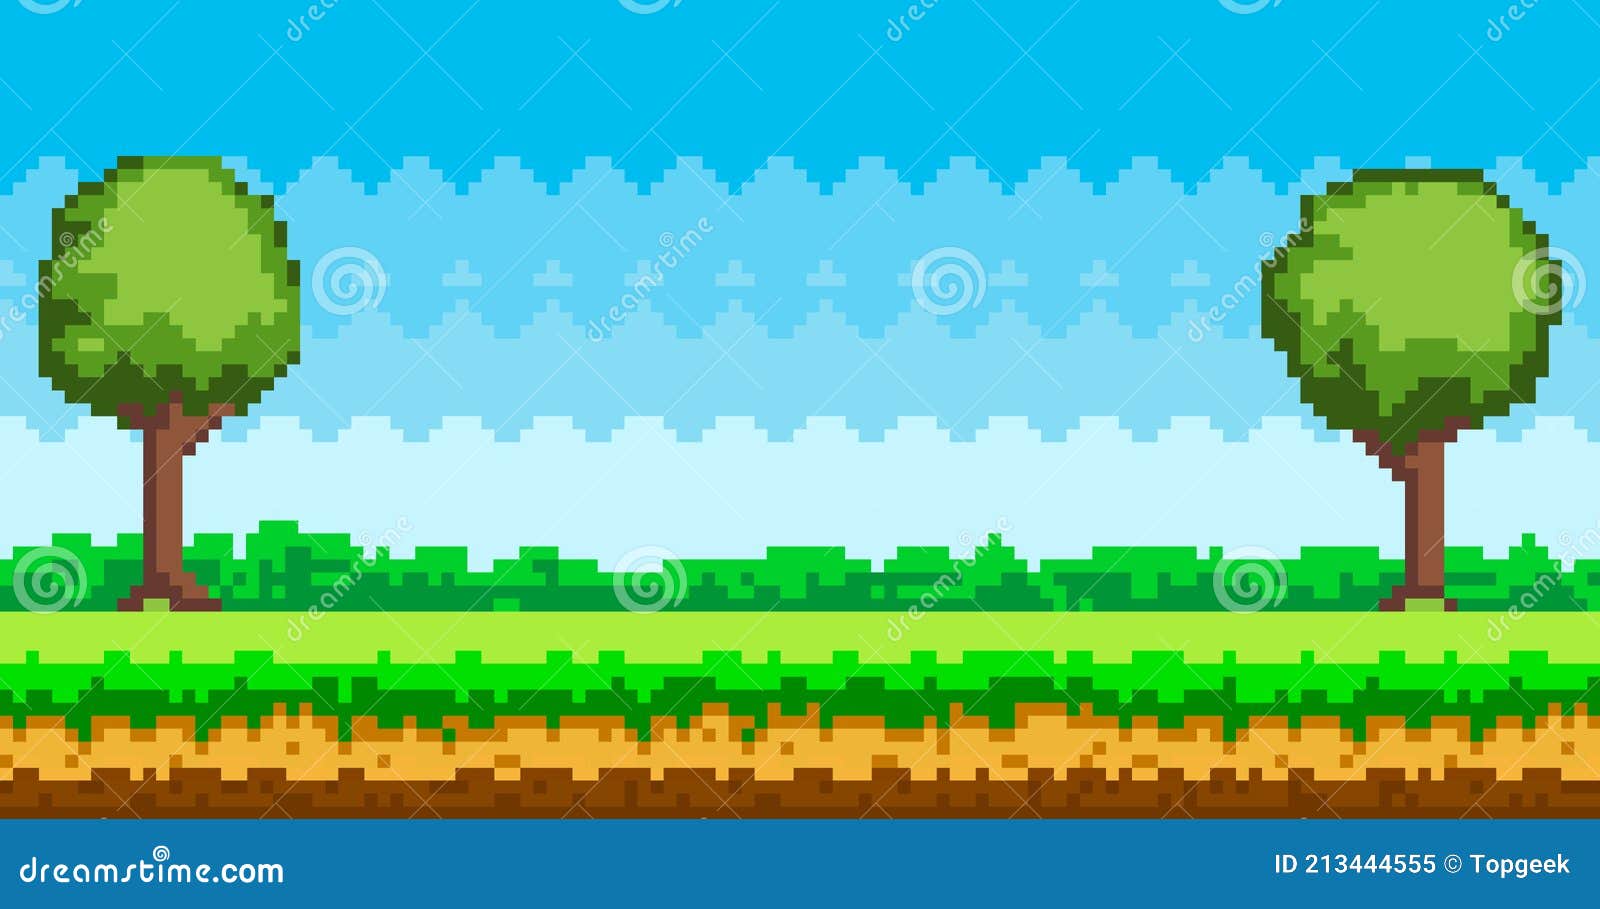 Hãy tưởng tượng một màn hình nền cỏ xanh tươi mát, kết hợp với ý tưởng Pixel Art độc đáo. Đến ngay với trò chơi nổi tiếng này để khám phá sự kết hợp hoàn hảo giữa đồ họa và kỹ thuật game.